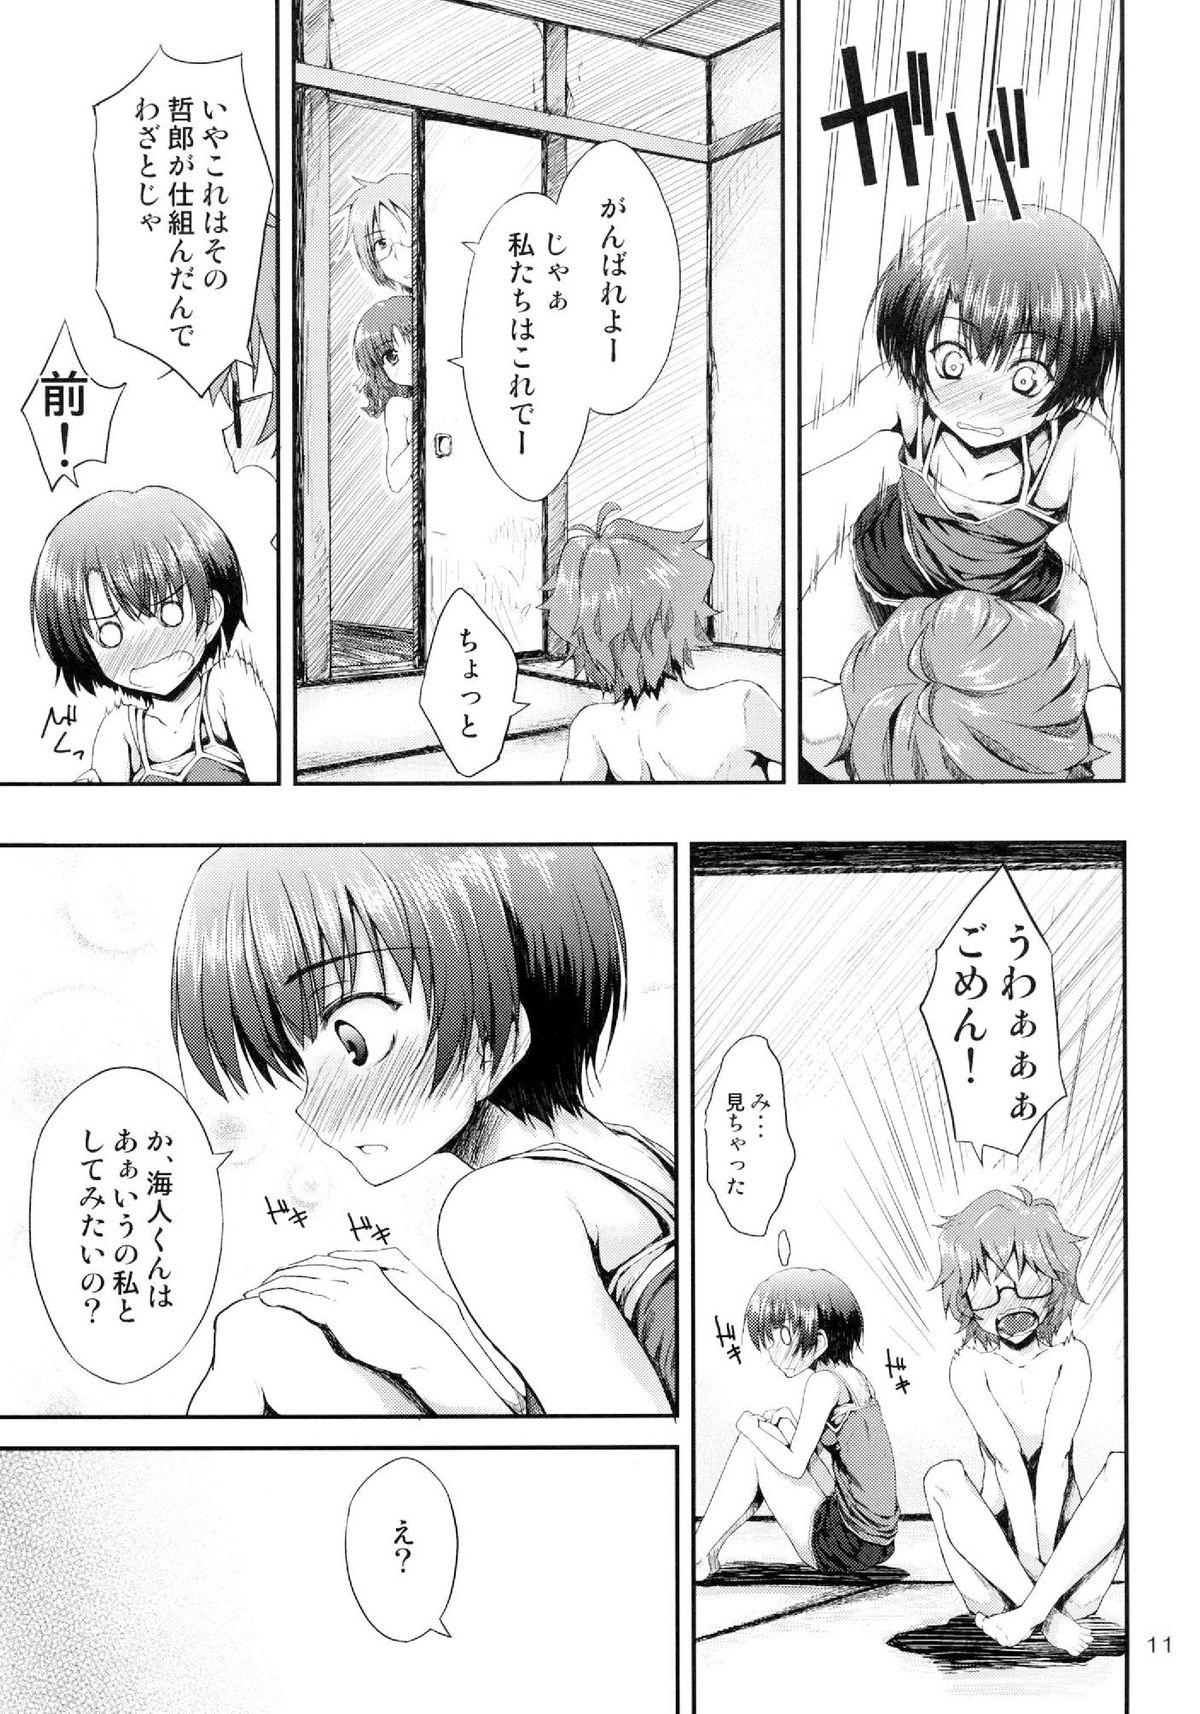 Awesome Ano Natsu wo Mou Ichido - Ano natsu de matteru Mum - Page 11